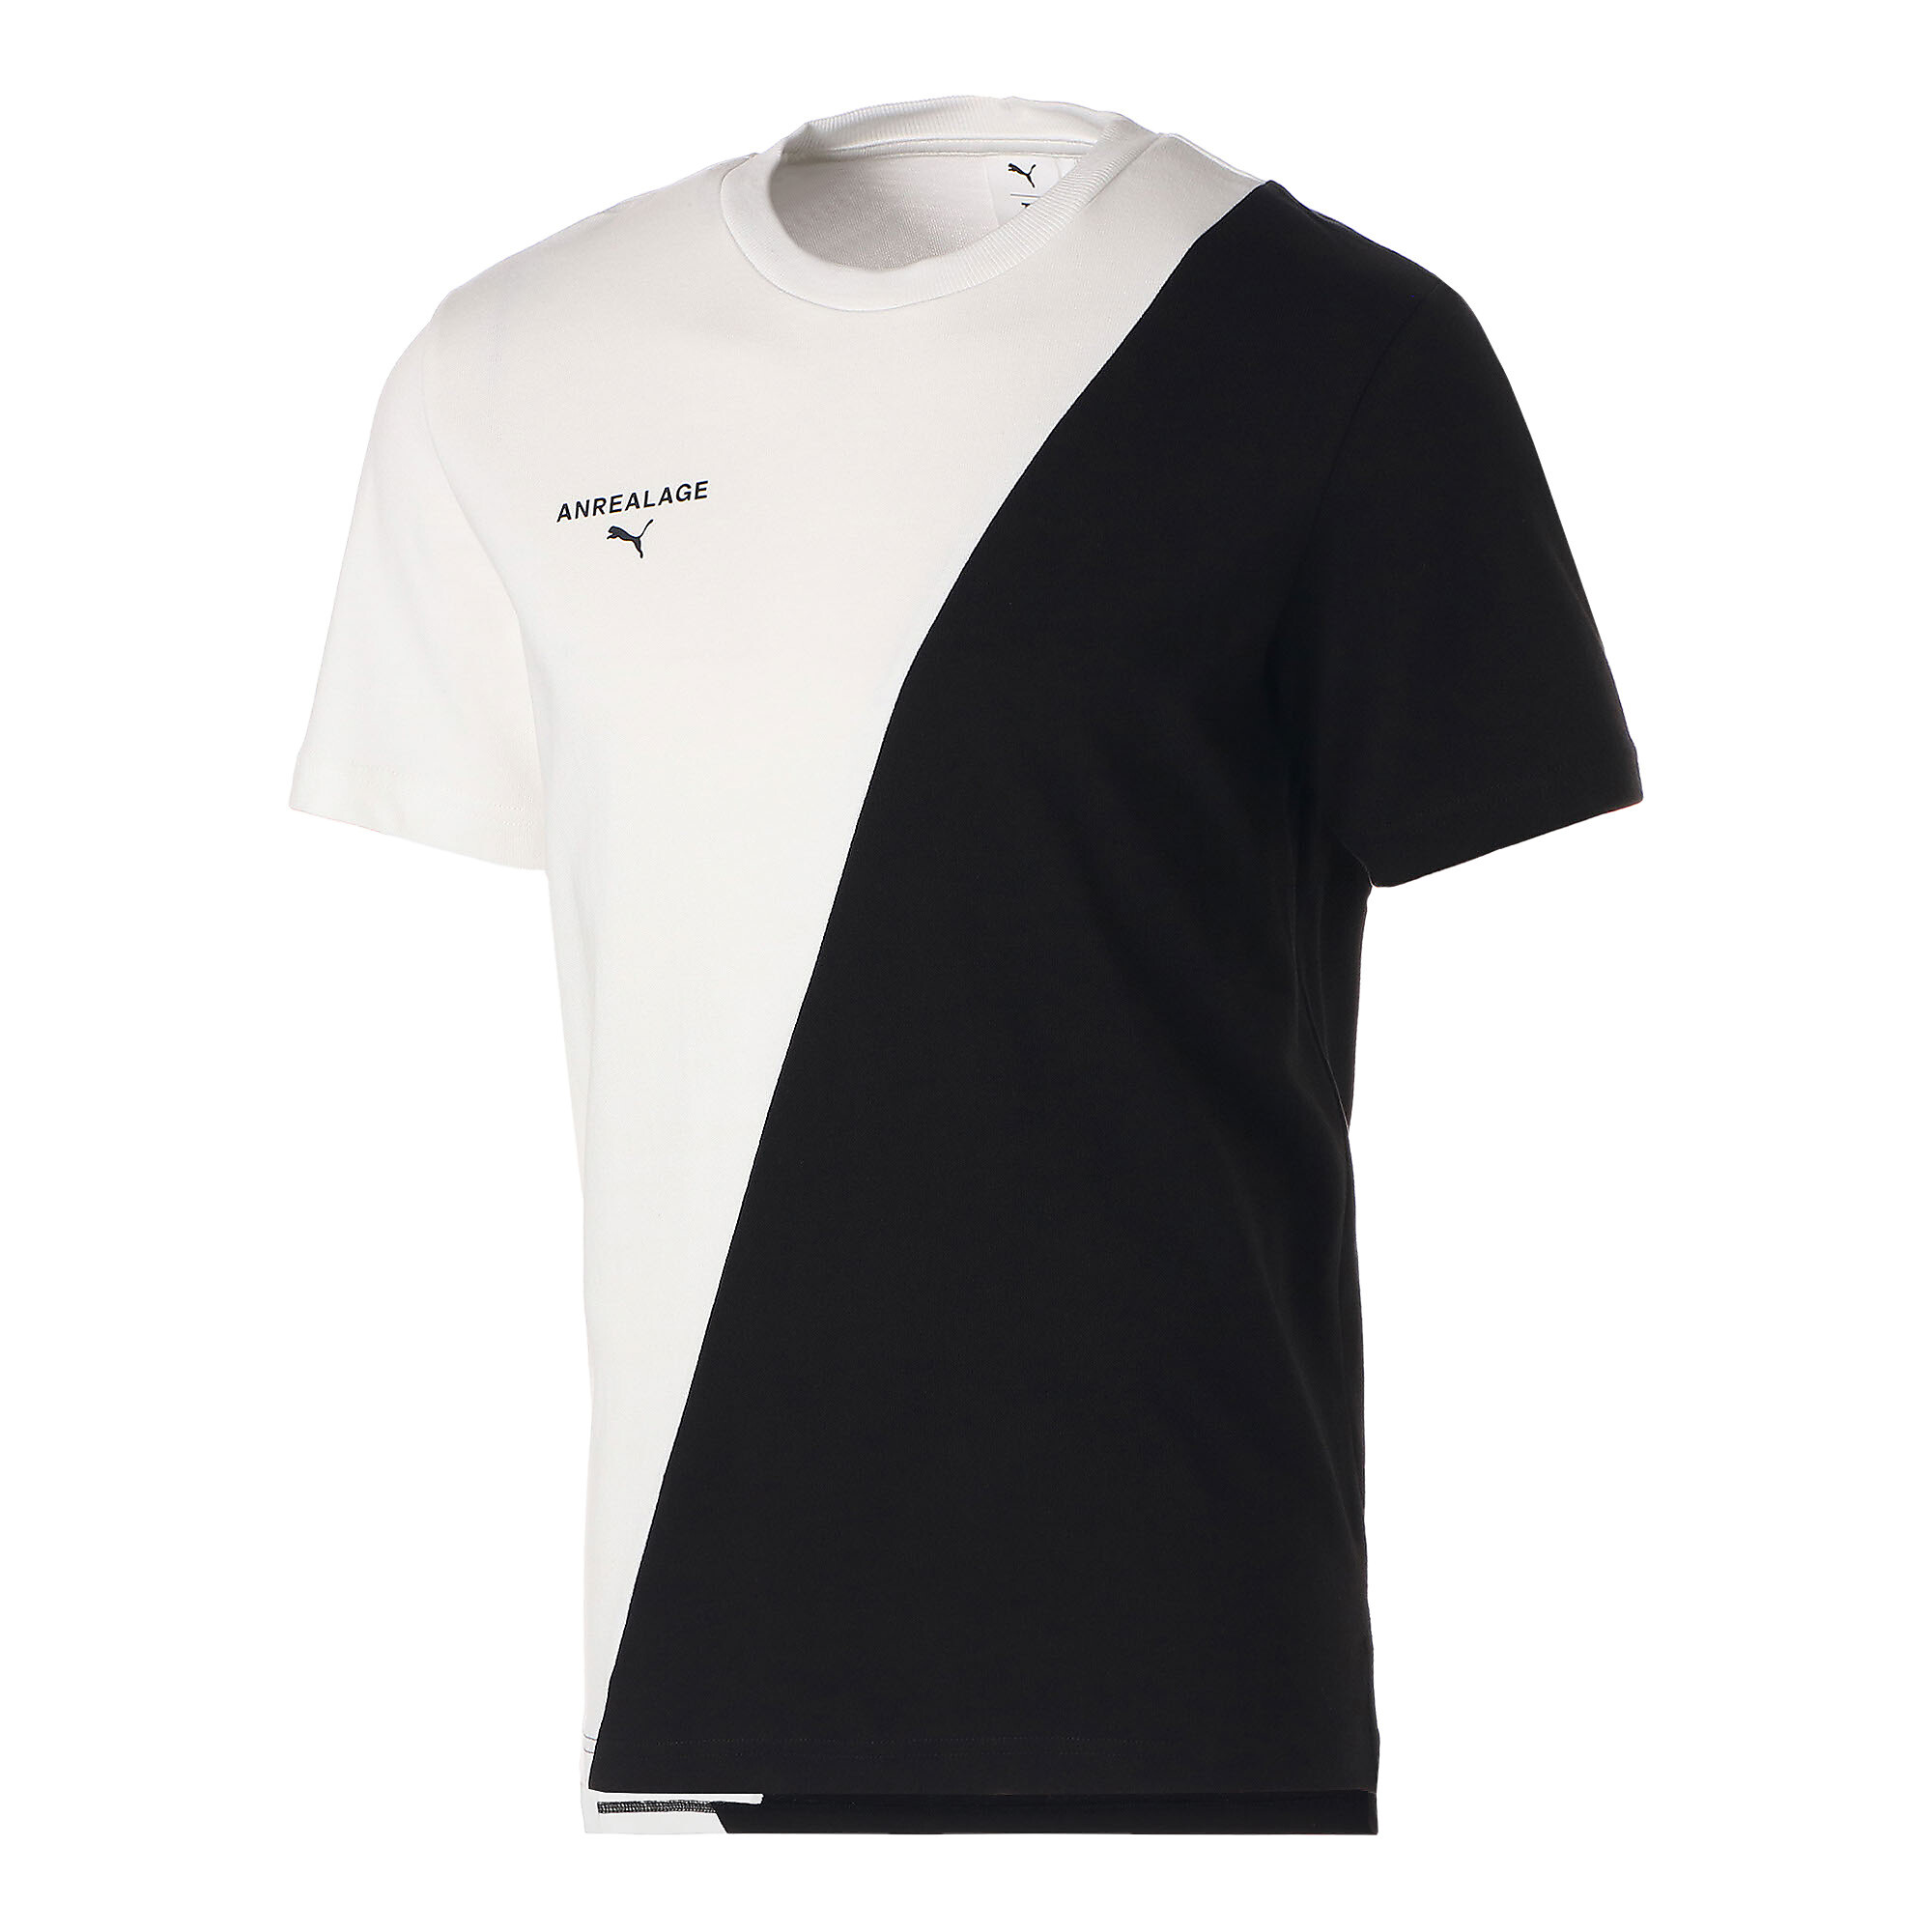 ＜プーマ公式通販＞ プーマ メンズ T7 ICONIC 半袖 Tシャツ メンズ PUMA Black ｜PUMA.com